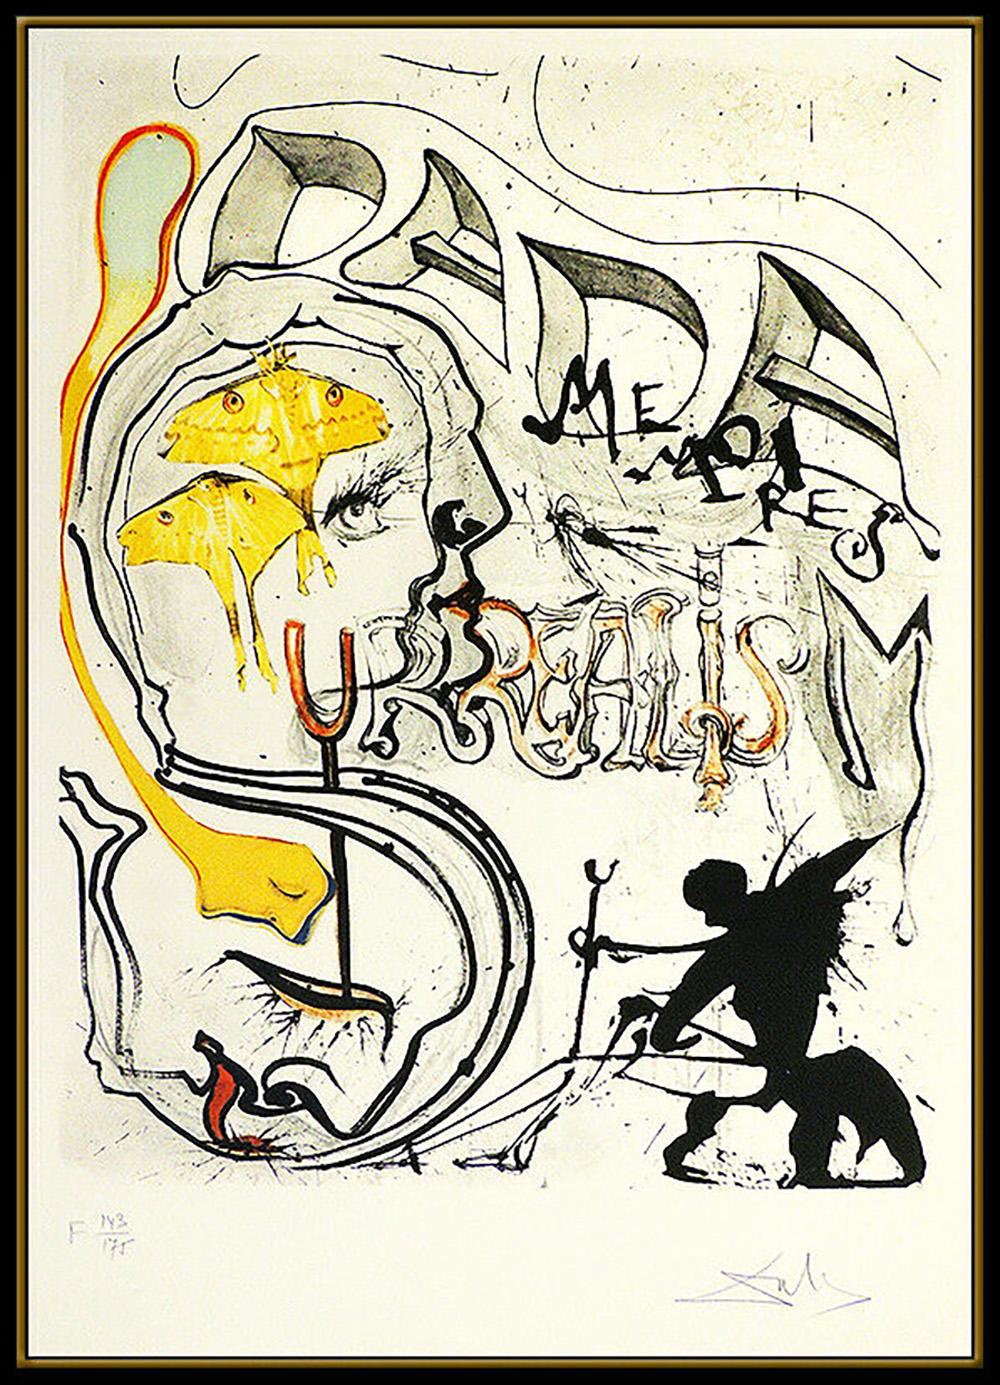 Salvador Dali Large Original Color Etching Hand Signed Angel Dada Surrealism Art - Print by Salvador Dalí